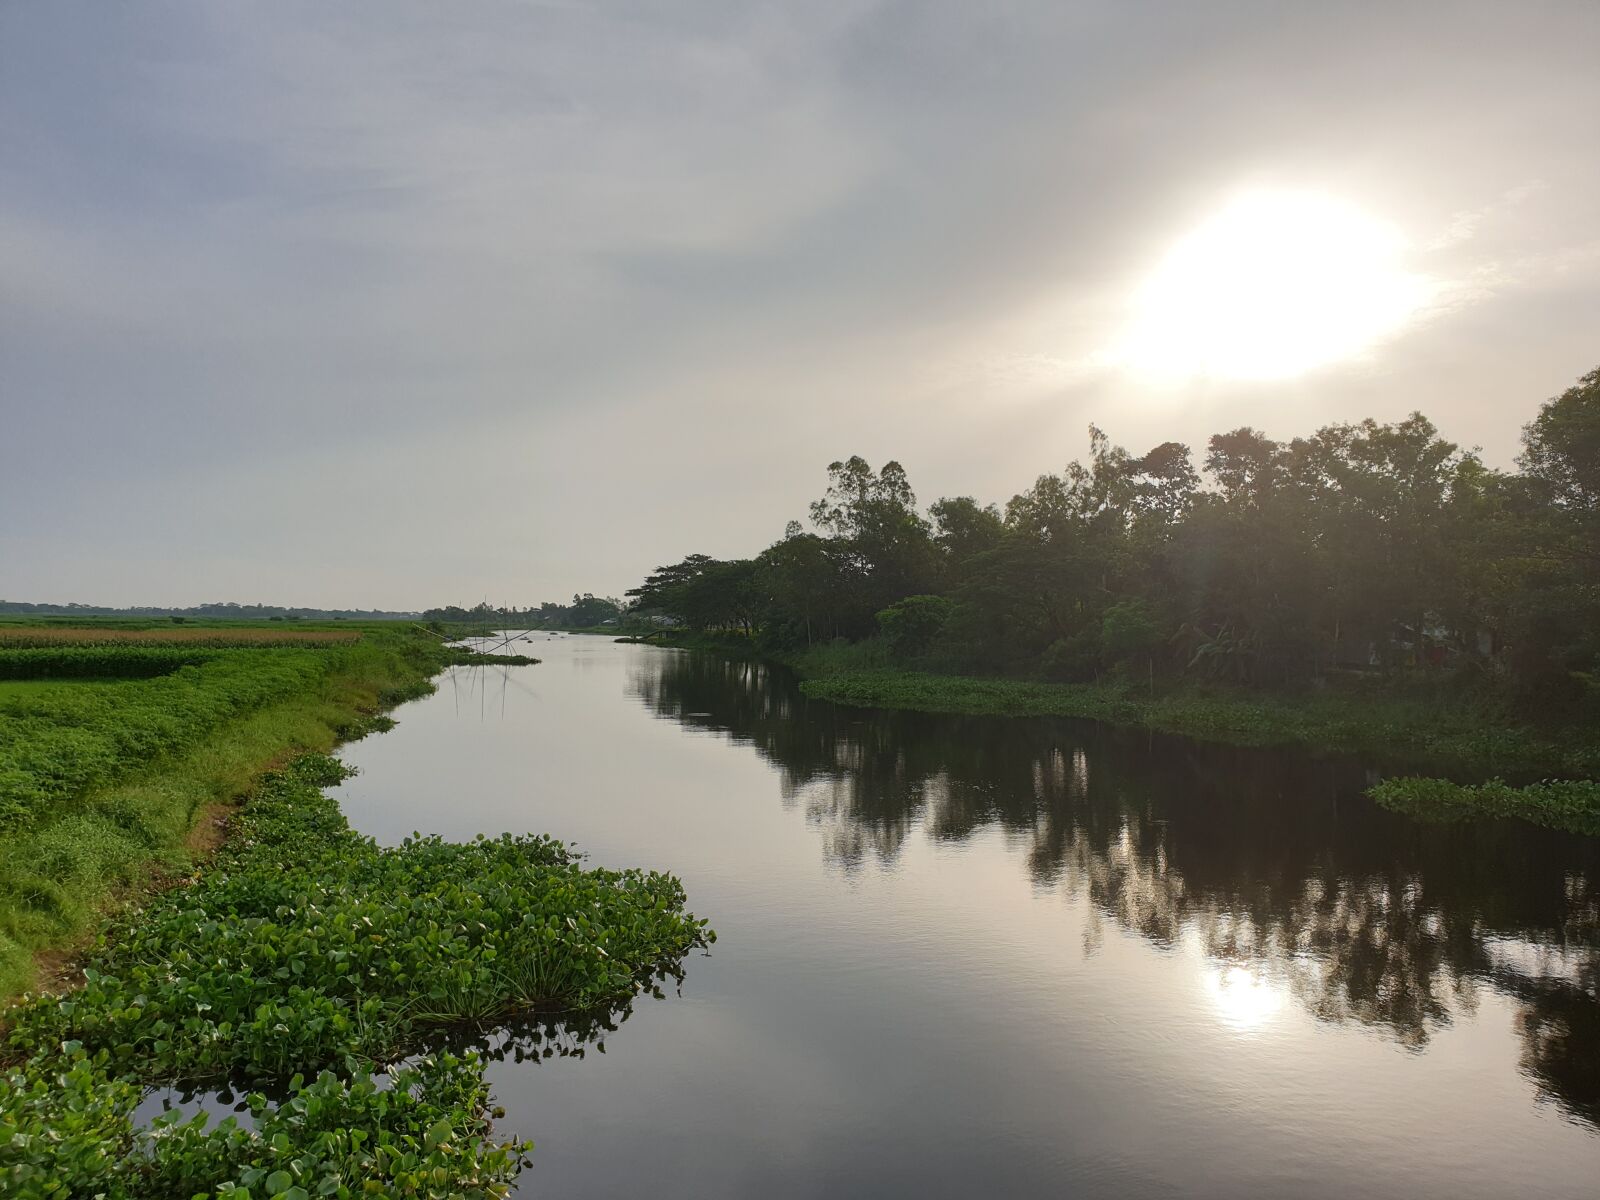 Samsung SM-N960F sample photo. Bangladesh, river, nature photography